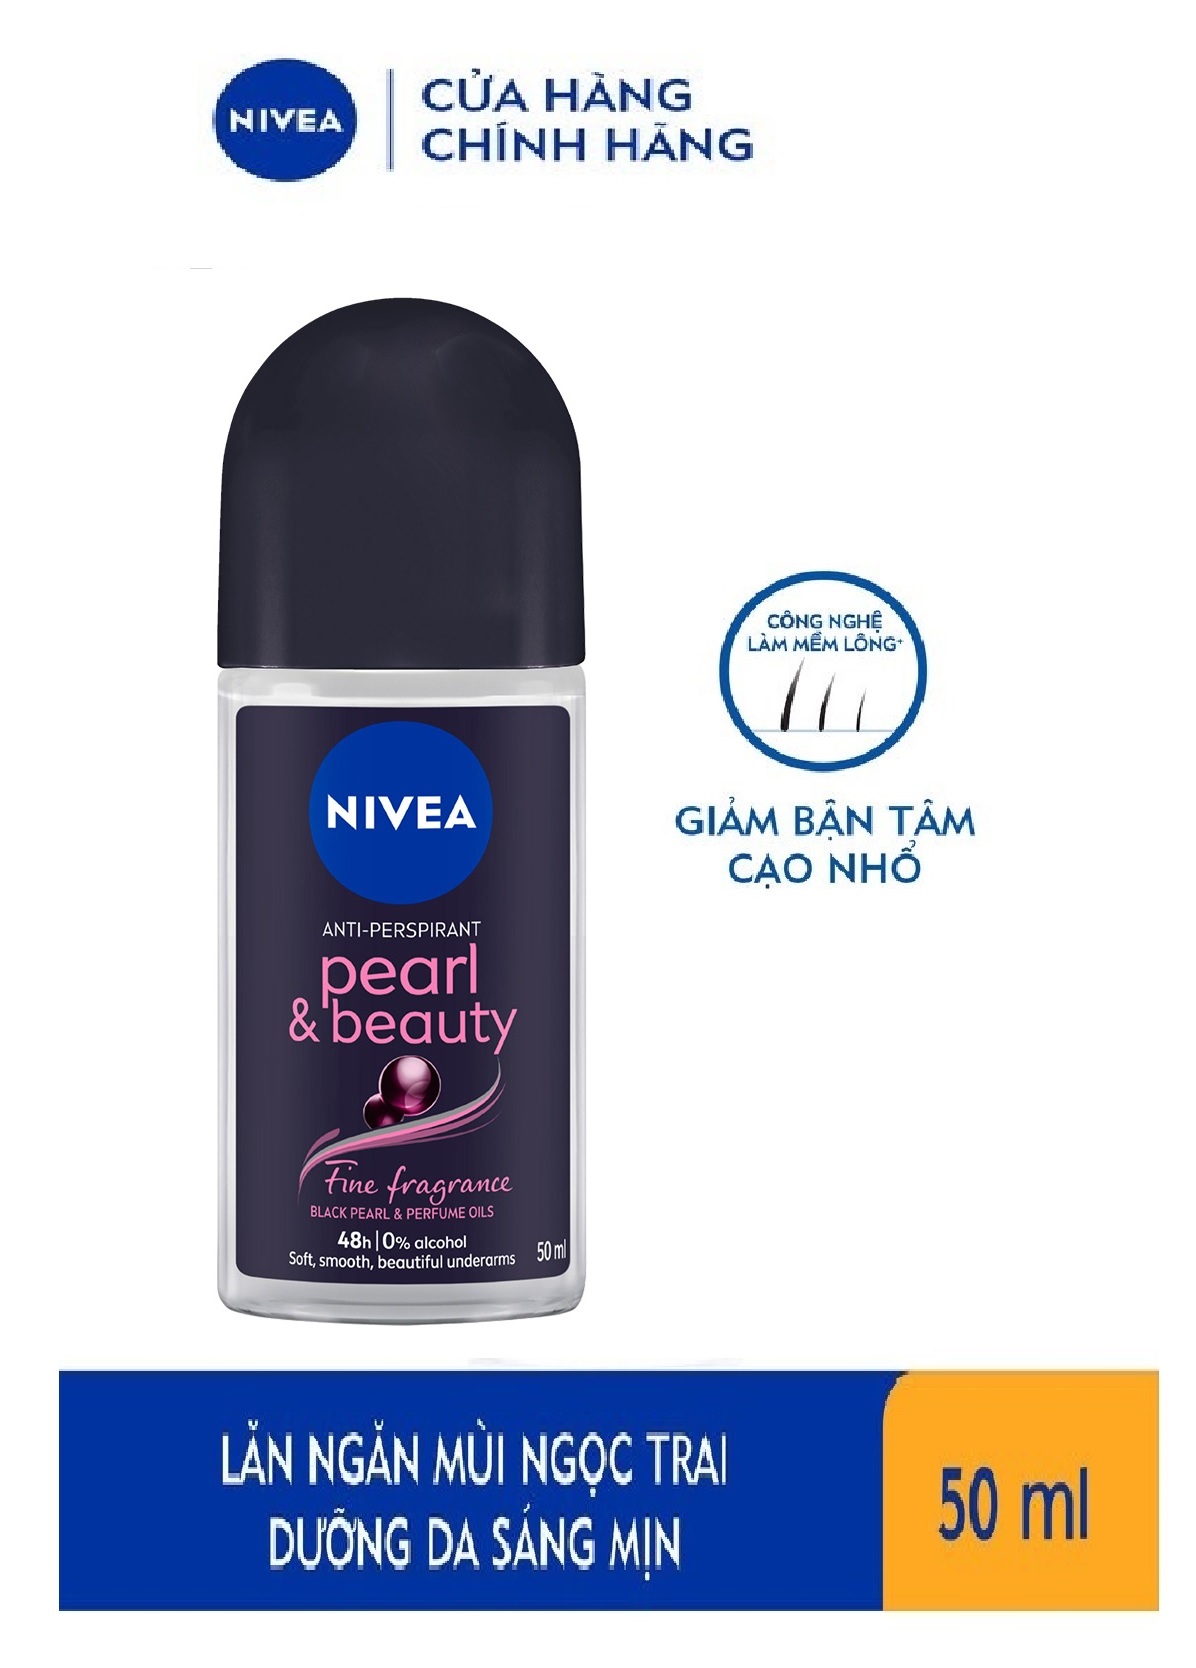 Lăn Ngăn Mùi NIVEA Pearl & Beauty Chiết Xuất Ngọc Trai (50 ml)